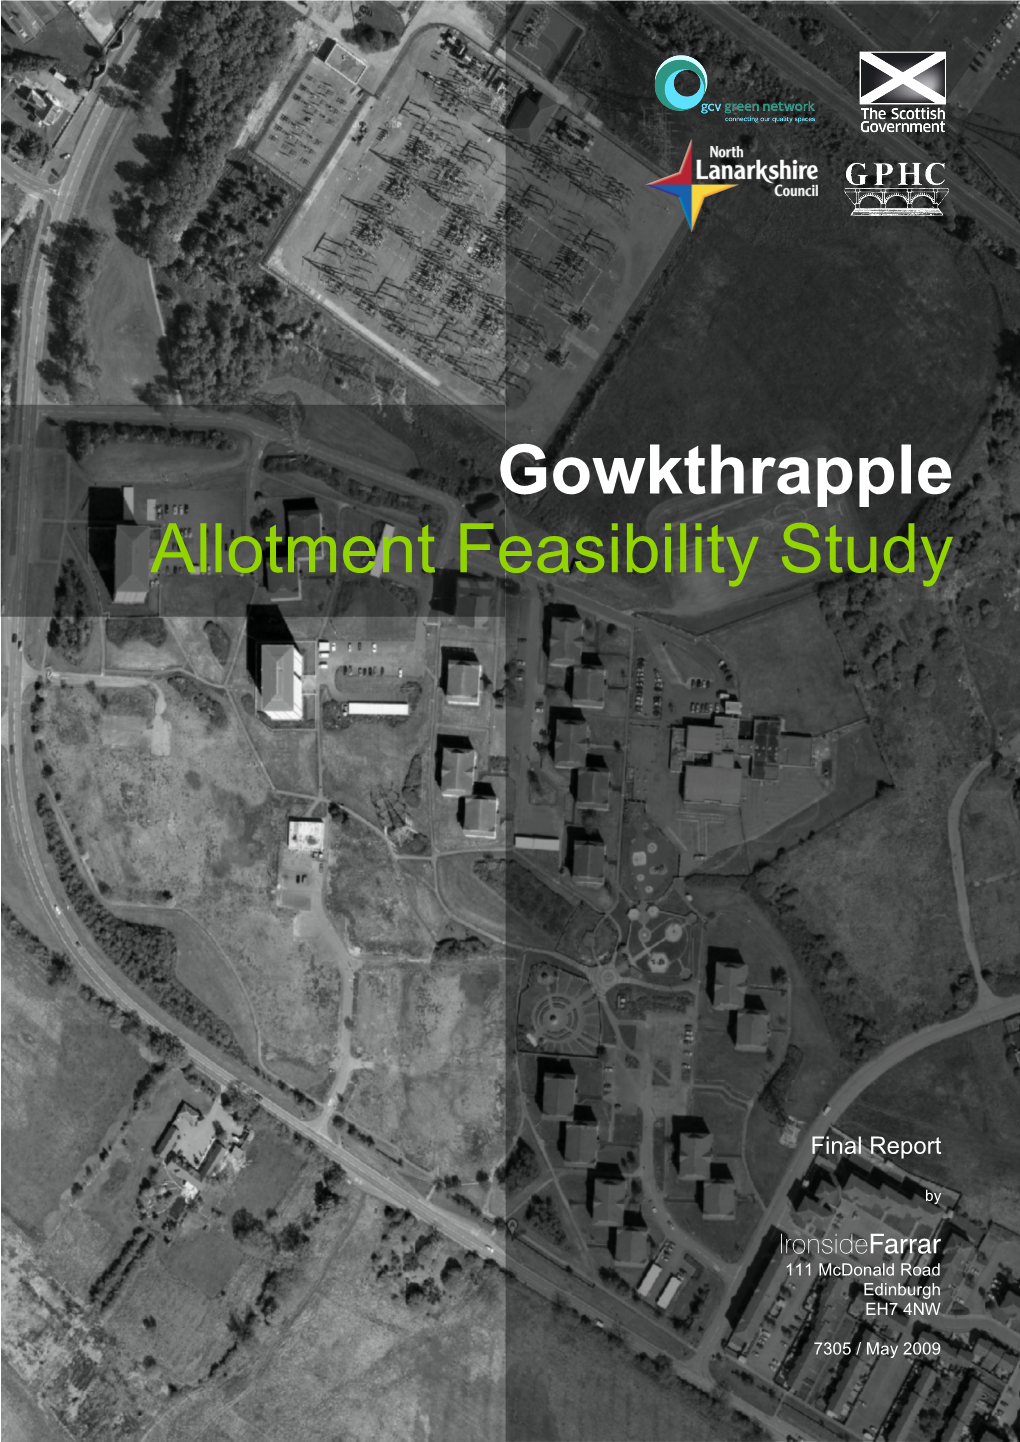 Gowkthrapple Allotment Feasibility Study